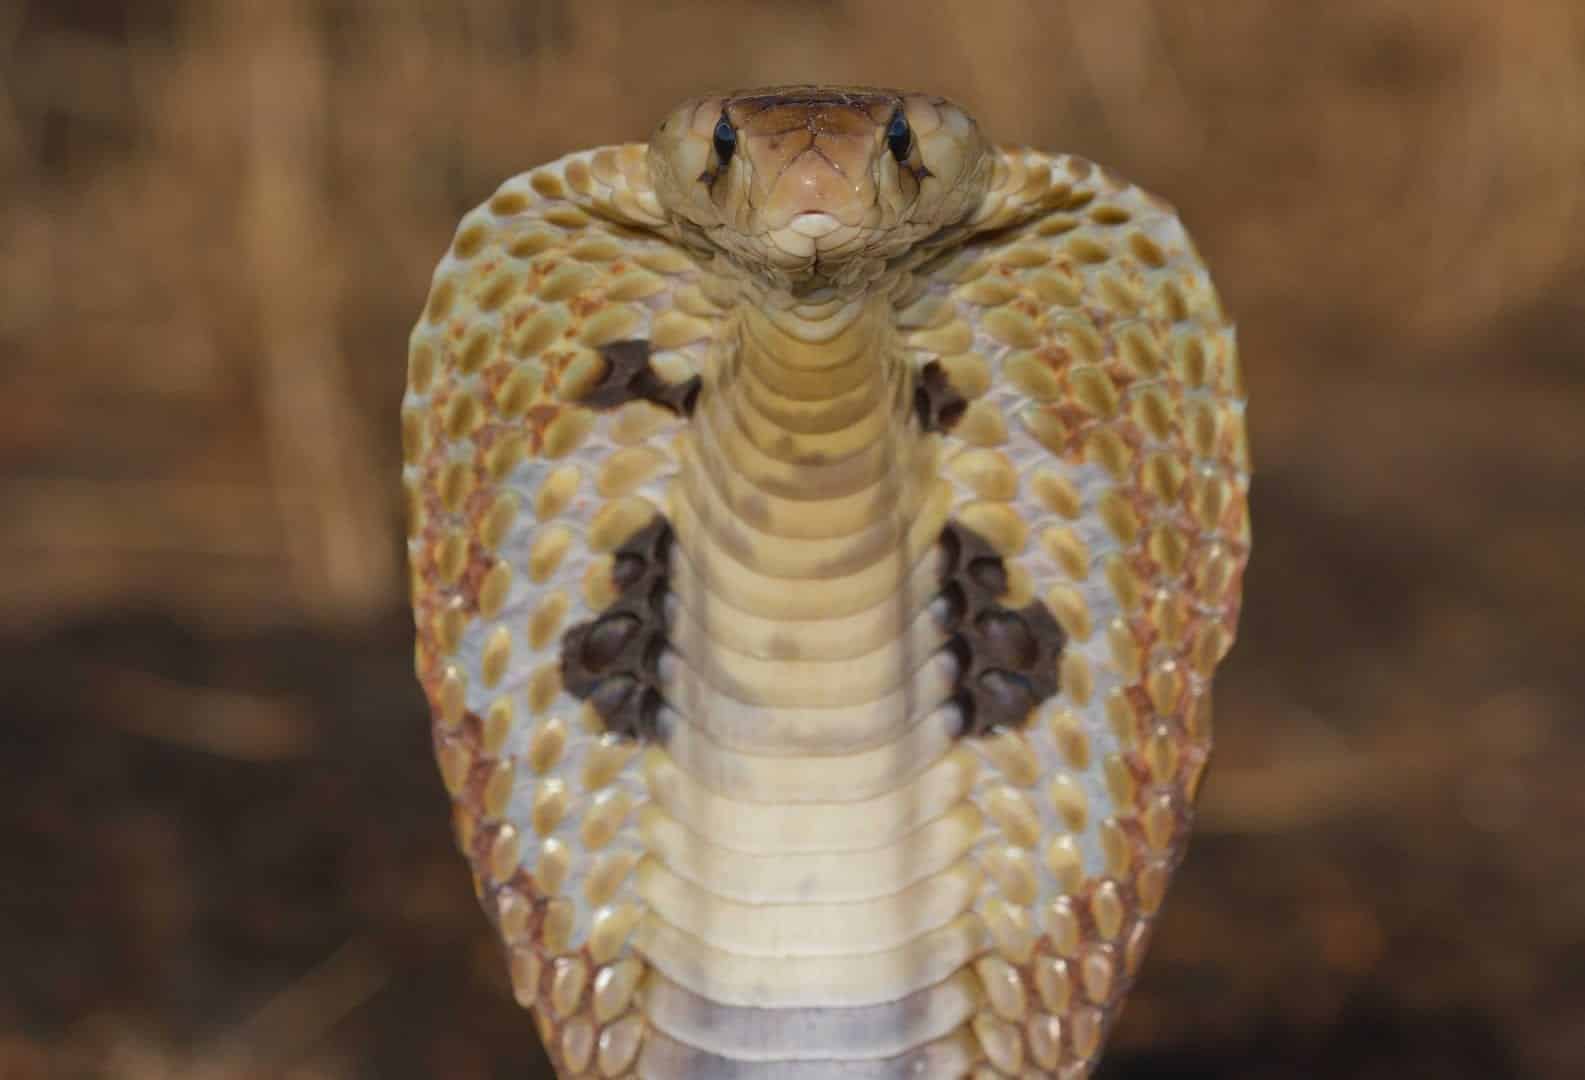 Naja - como vivem e principais características da espécie de cobra